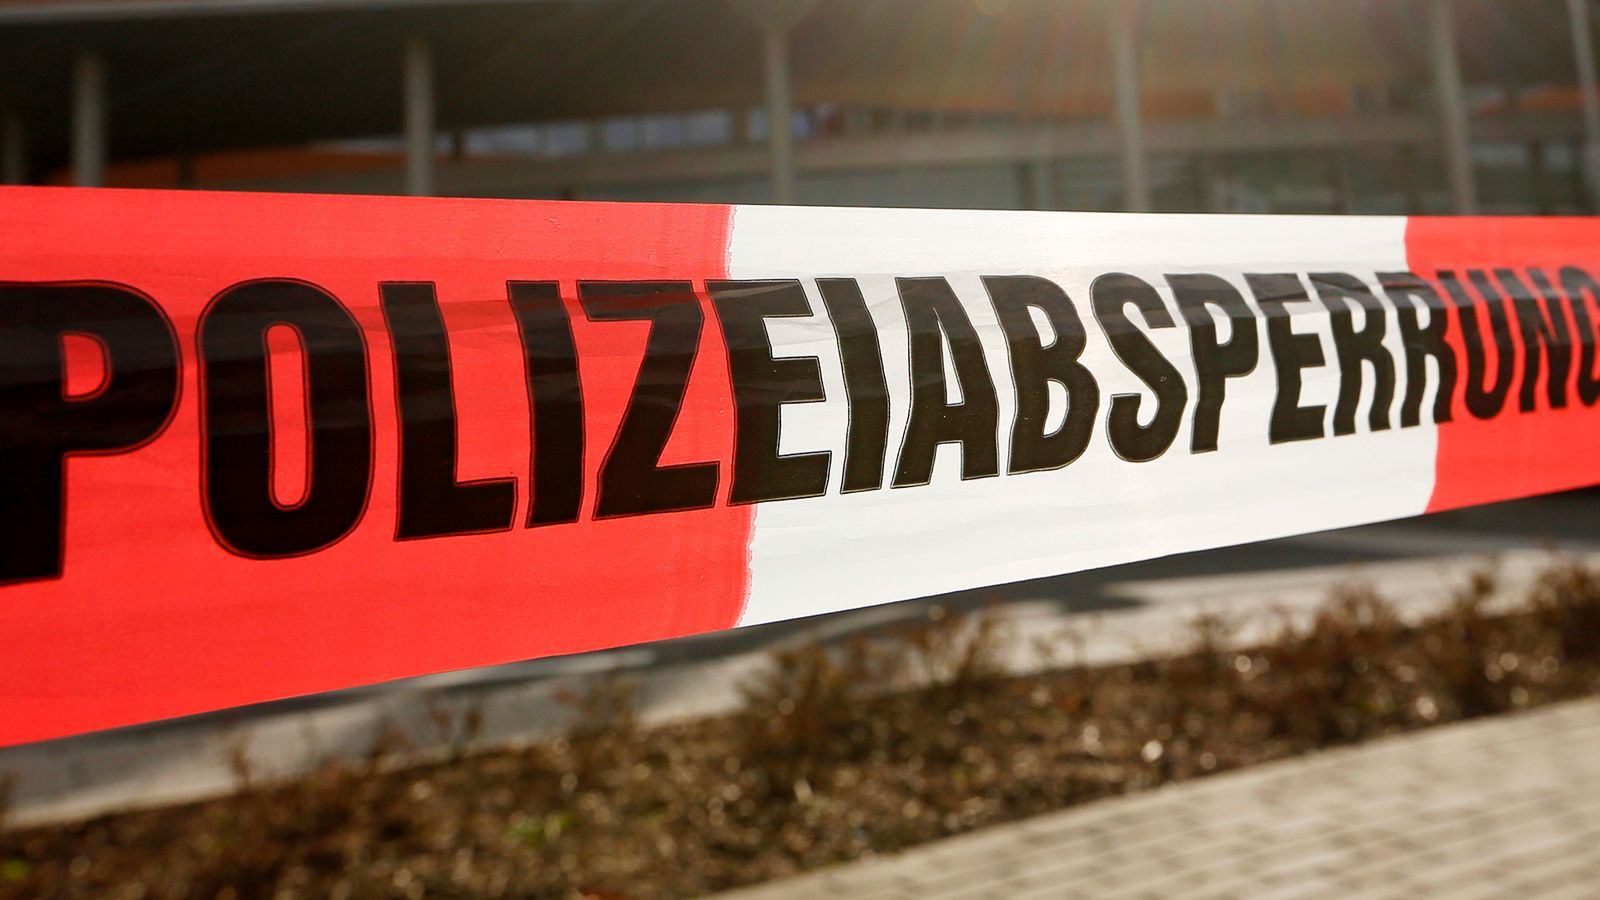 Two children severely injured by knife-wielding attacker near school in Germany